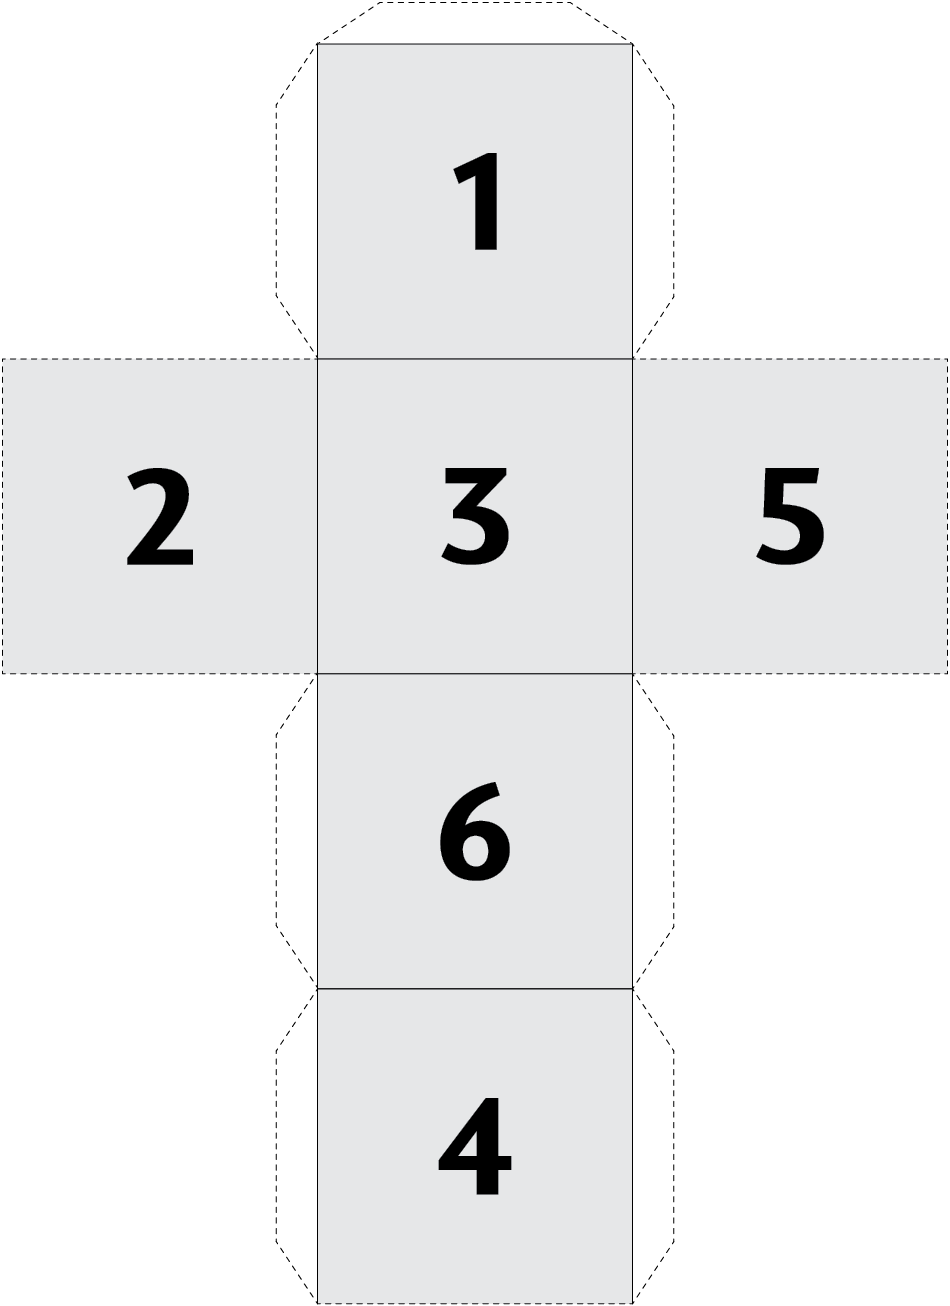 Ilustração de cubo planificado. São 4 quadrados alinhados verticalmente, cada um com um número. De cima para baixo, respectivamente, são: 1, 3, 6, 4. Há quadrados alinhados com o número 3: ao lado esquerdo o quadrado com o número 2 e ao lado direito, o quadrado com o número 5.